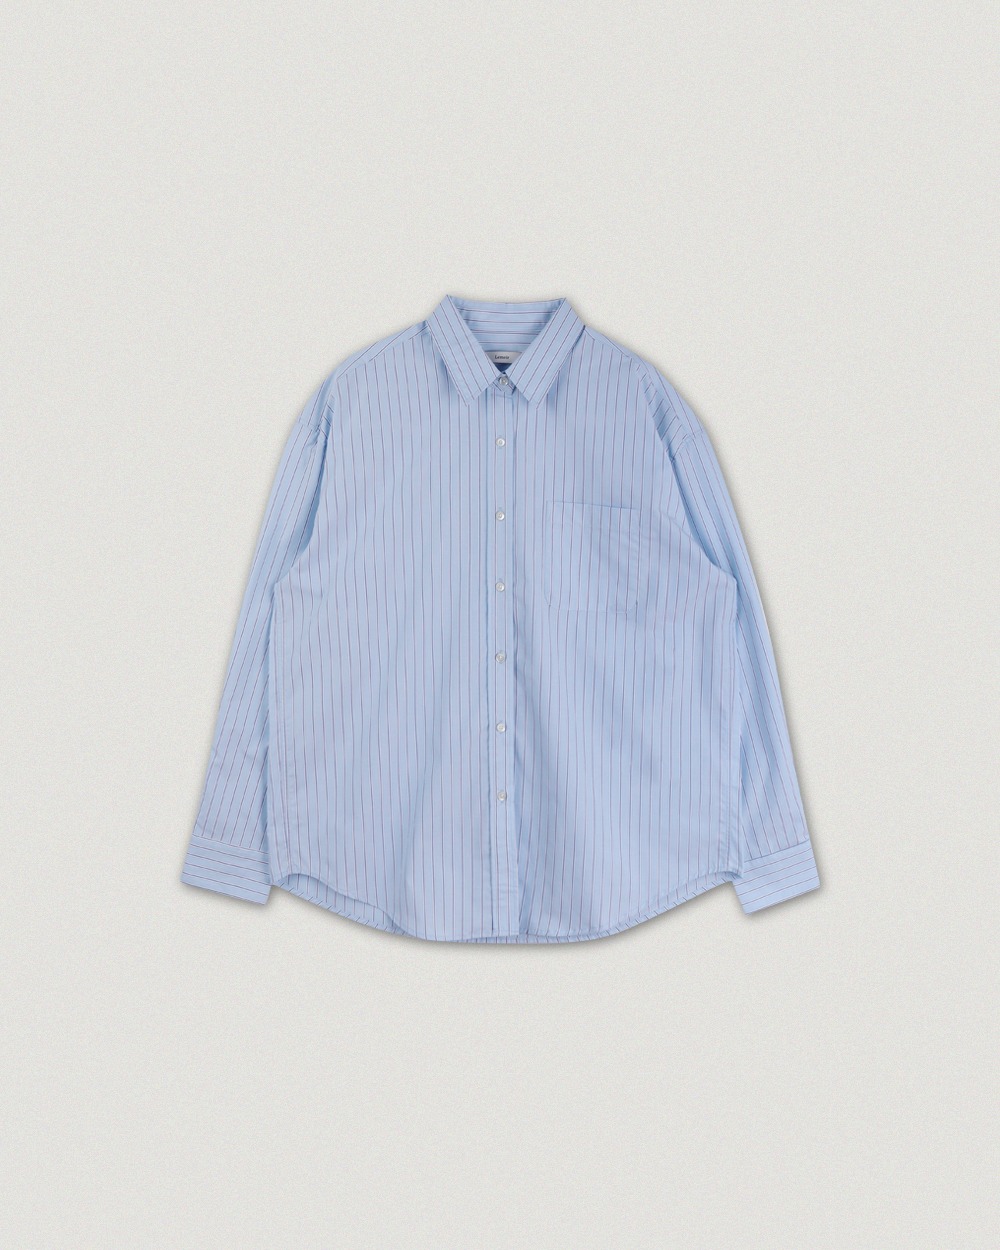 Mori Stripe Shirt - Sky blue